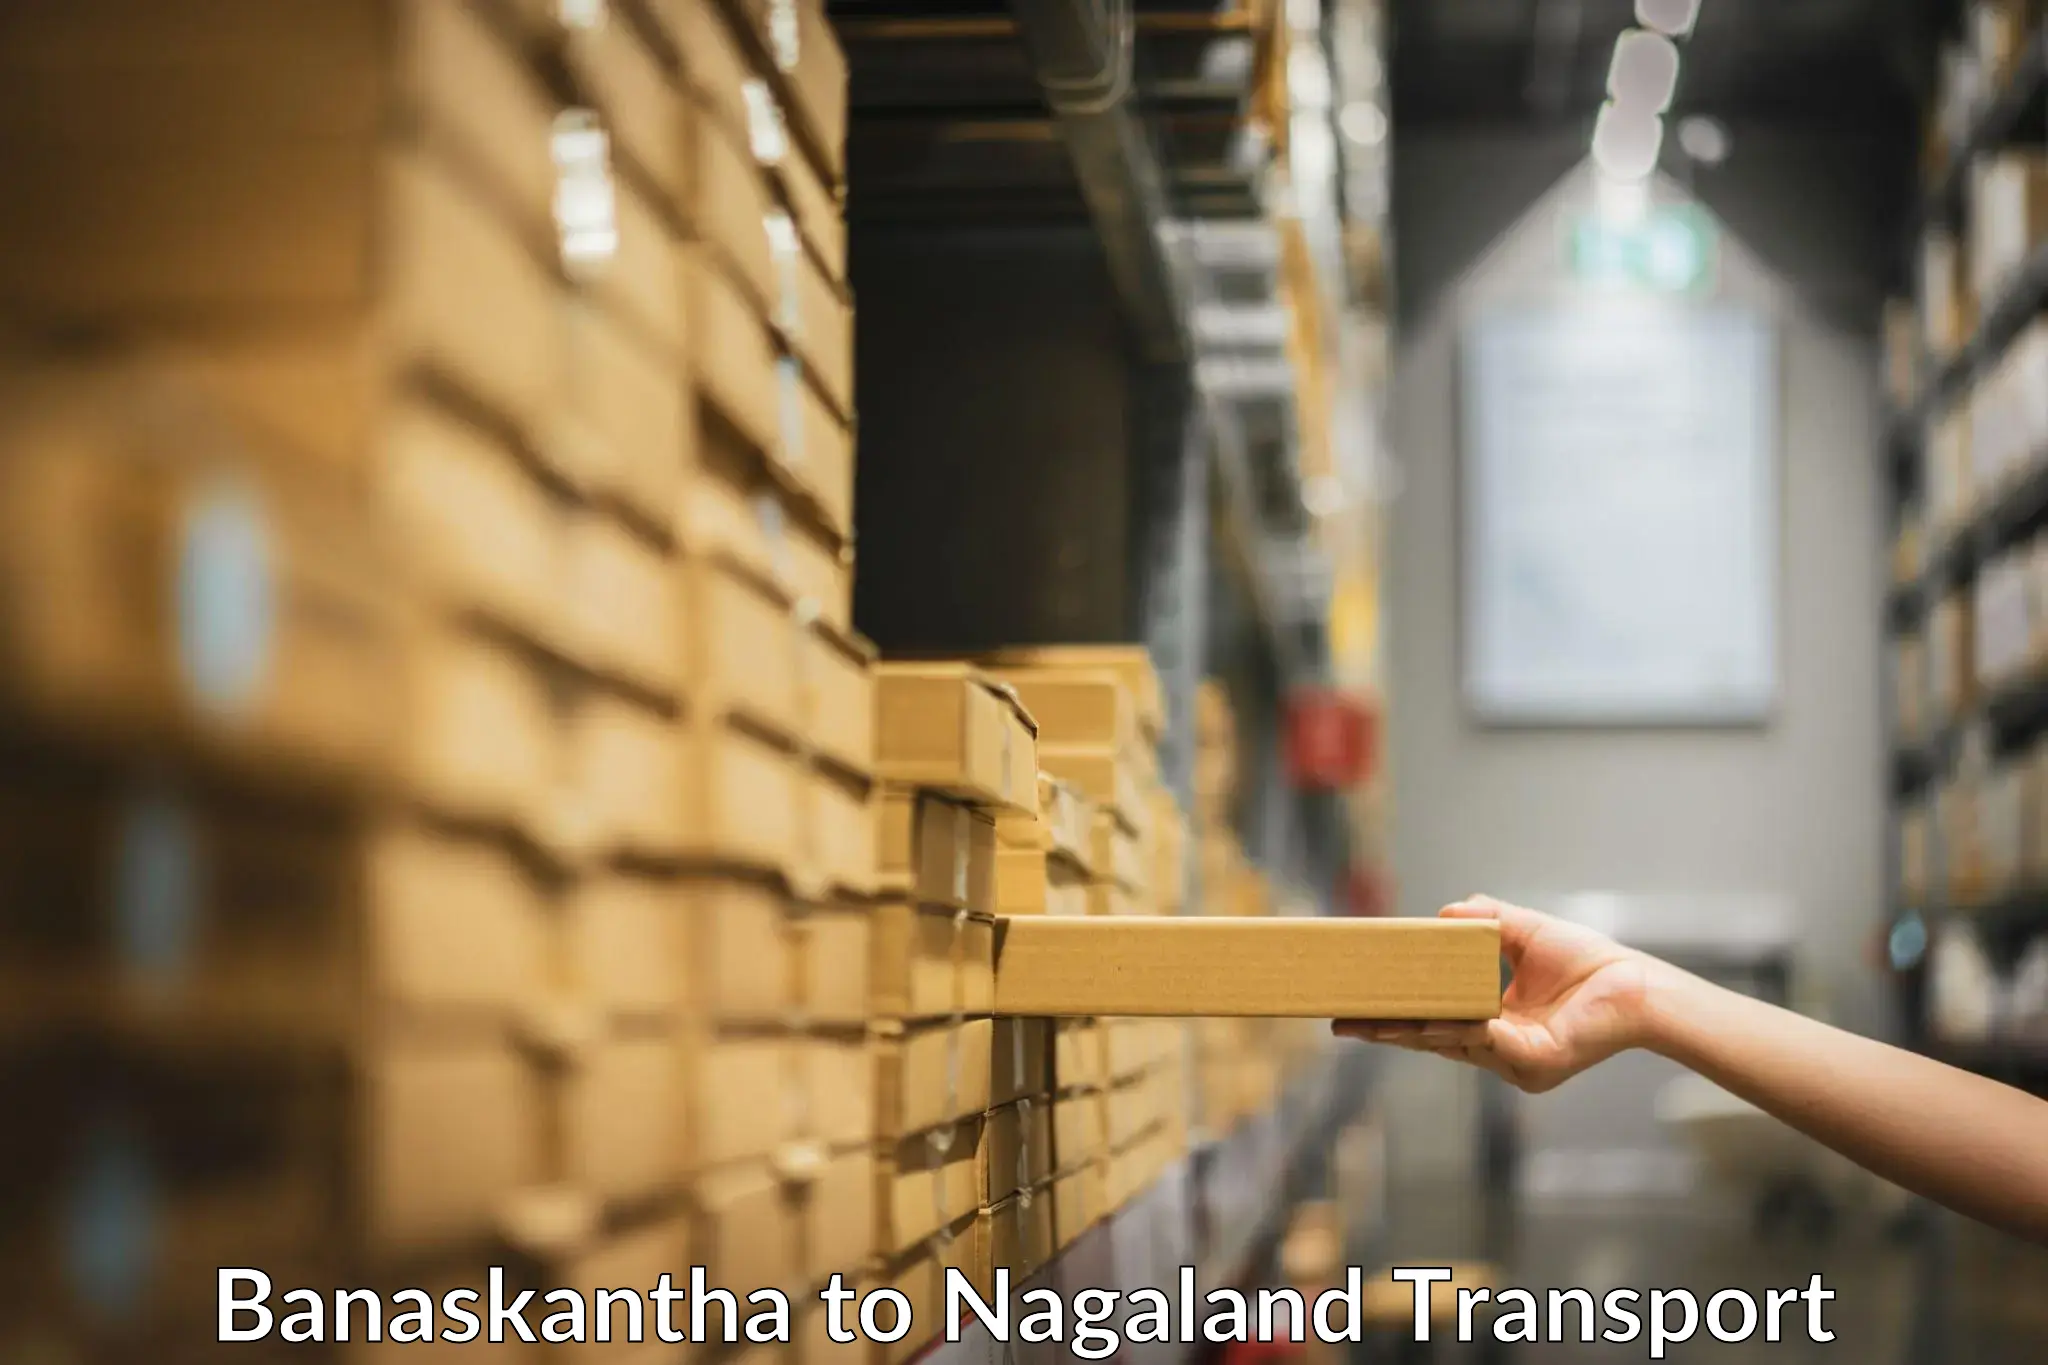 Commercial transport service Banaskantha to Longleng